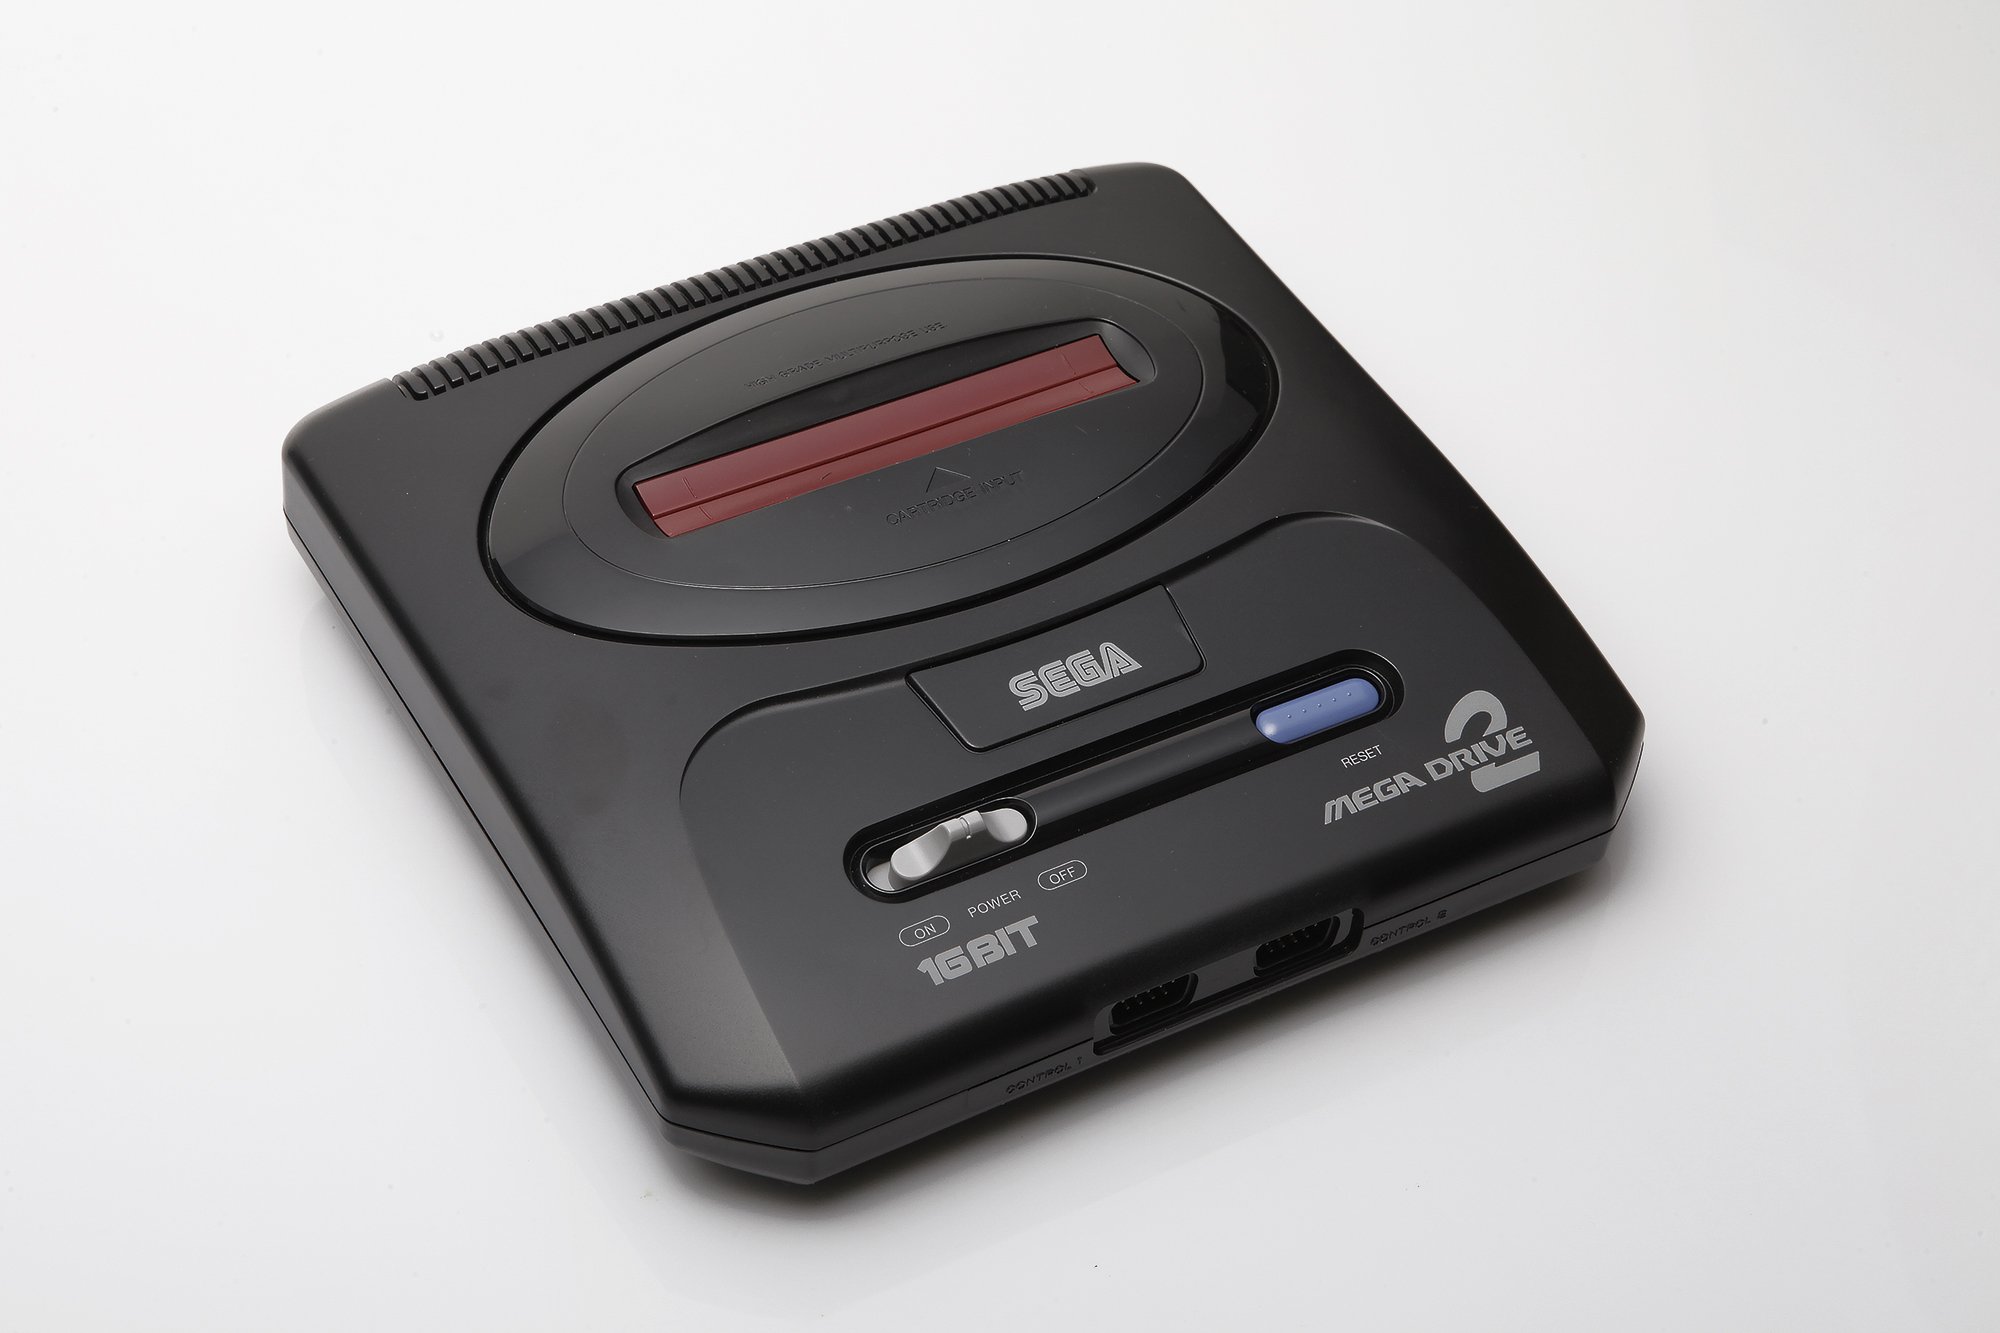 Игры сега мега драйв 2. Приставка Sega Mega Drive 2. Игровая приставка Sega Mega Drive 2. Sega Mega Drive 1. Sega Mega Drive Console.